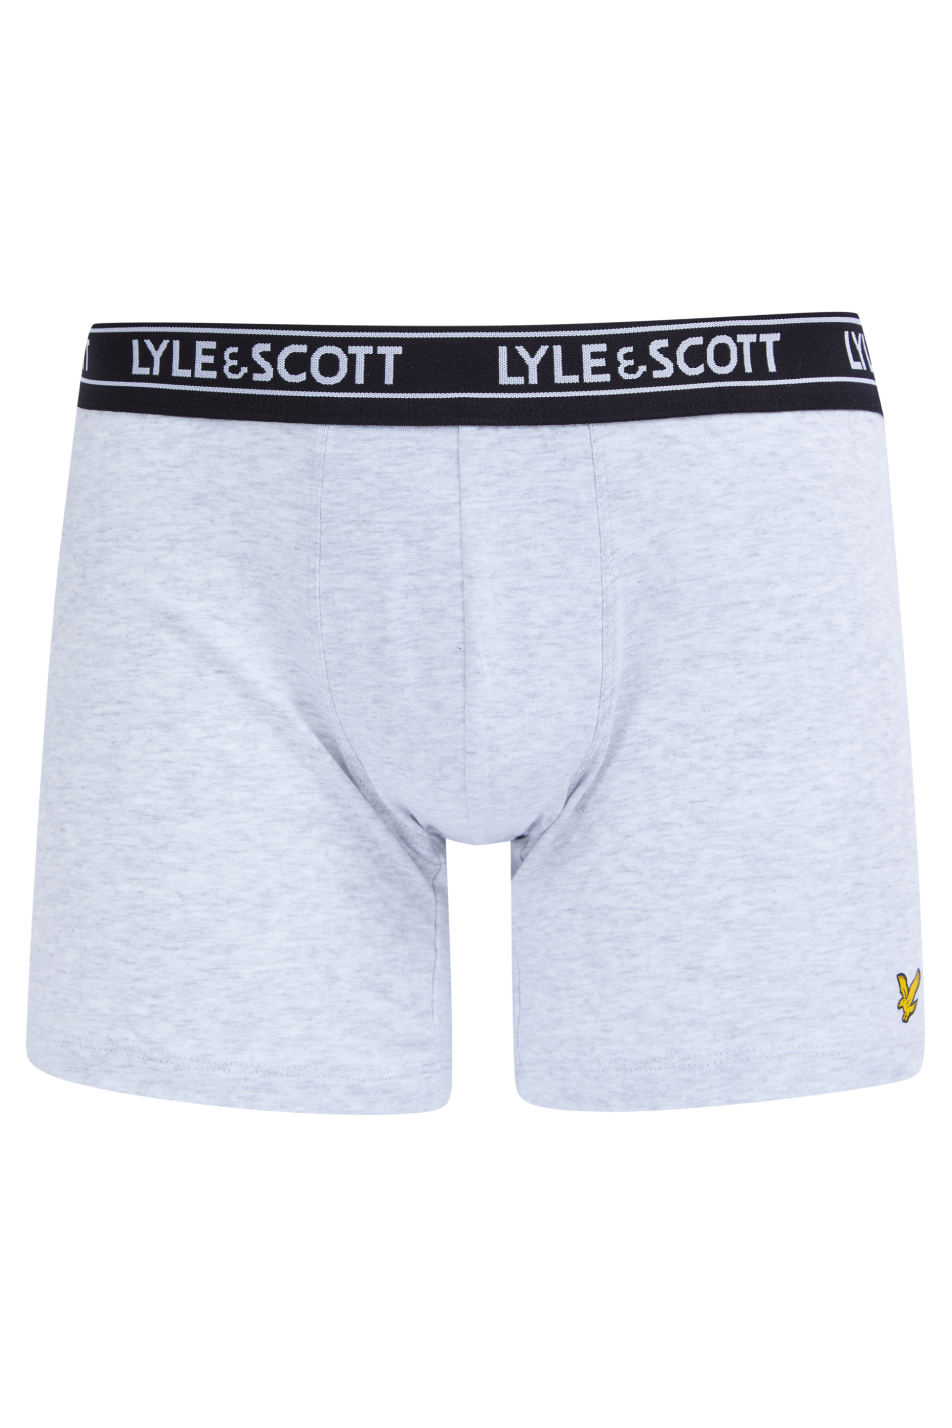 Lyle & Scott 4 Pack Men's Underwear Gift Set